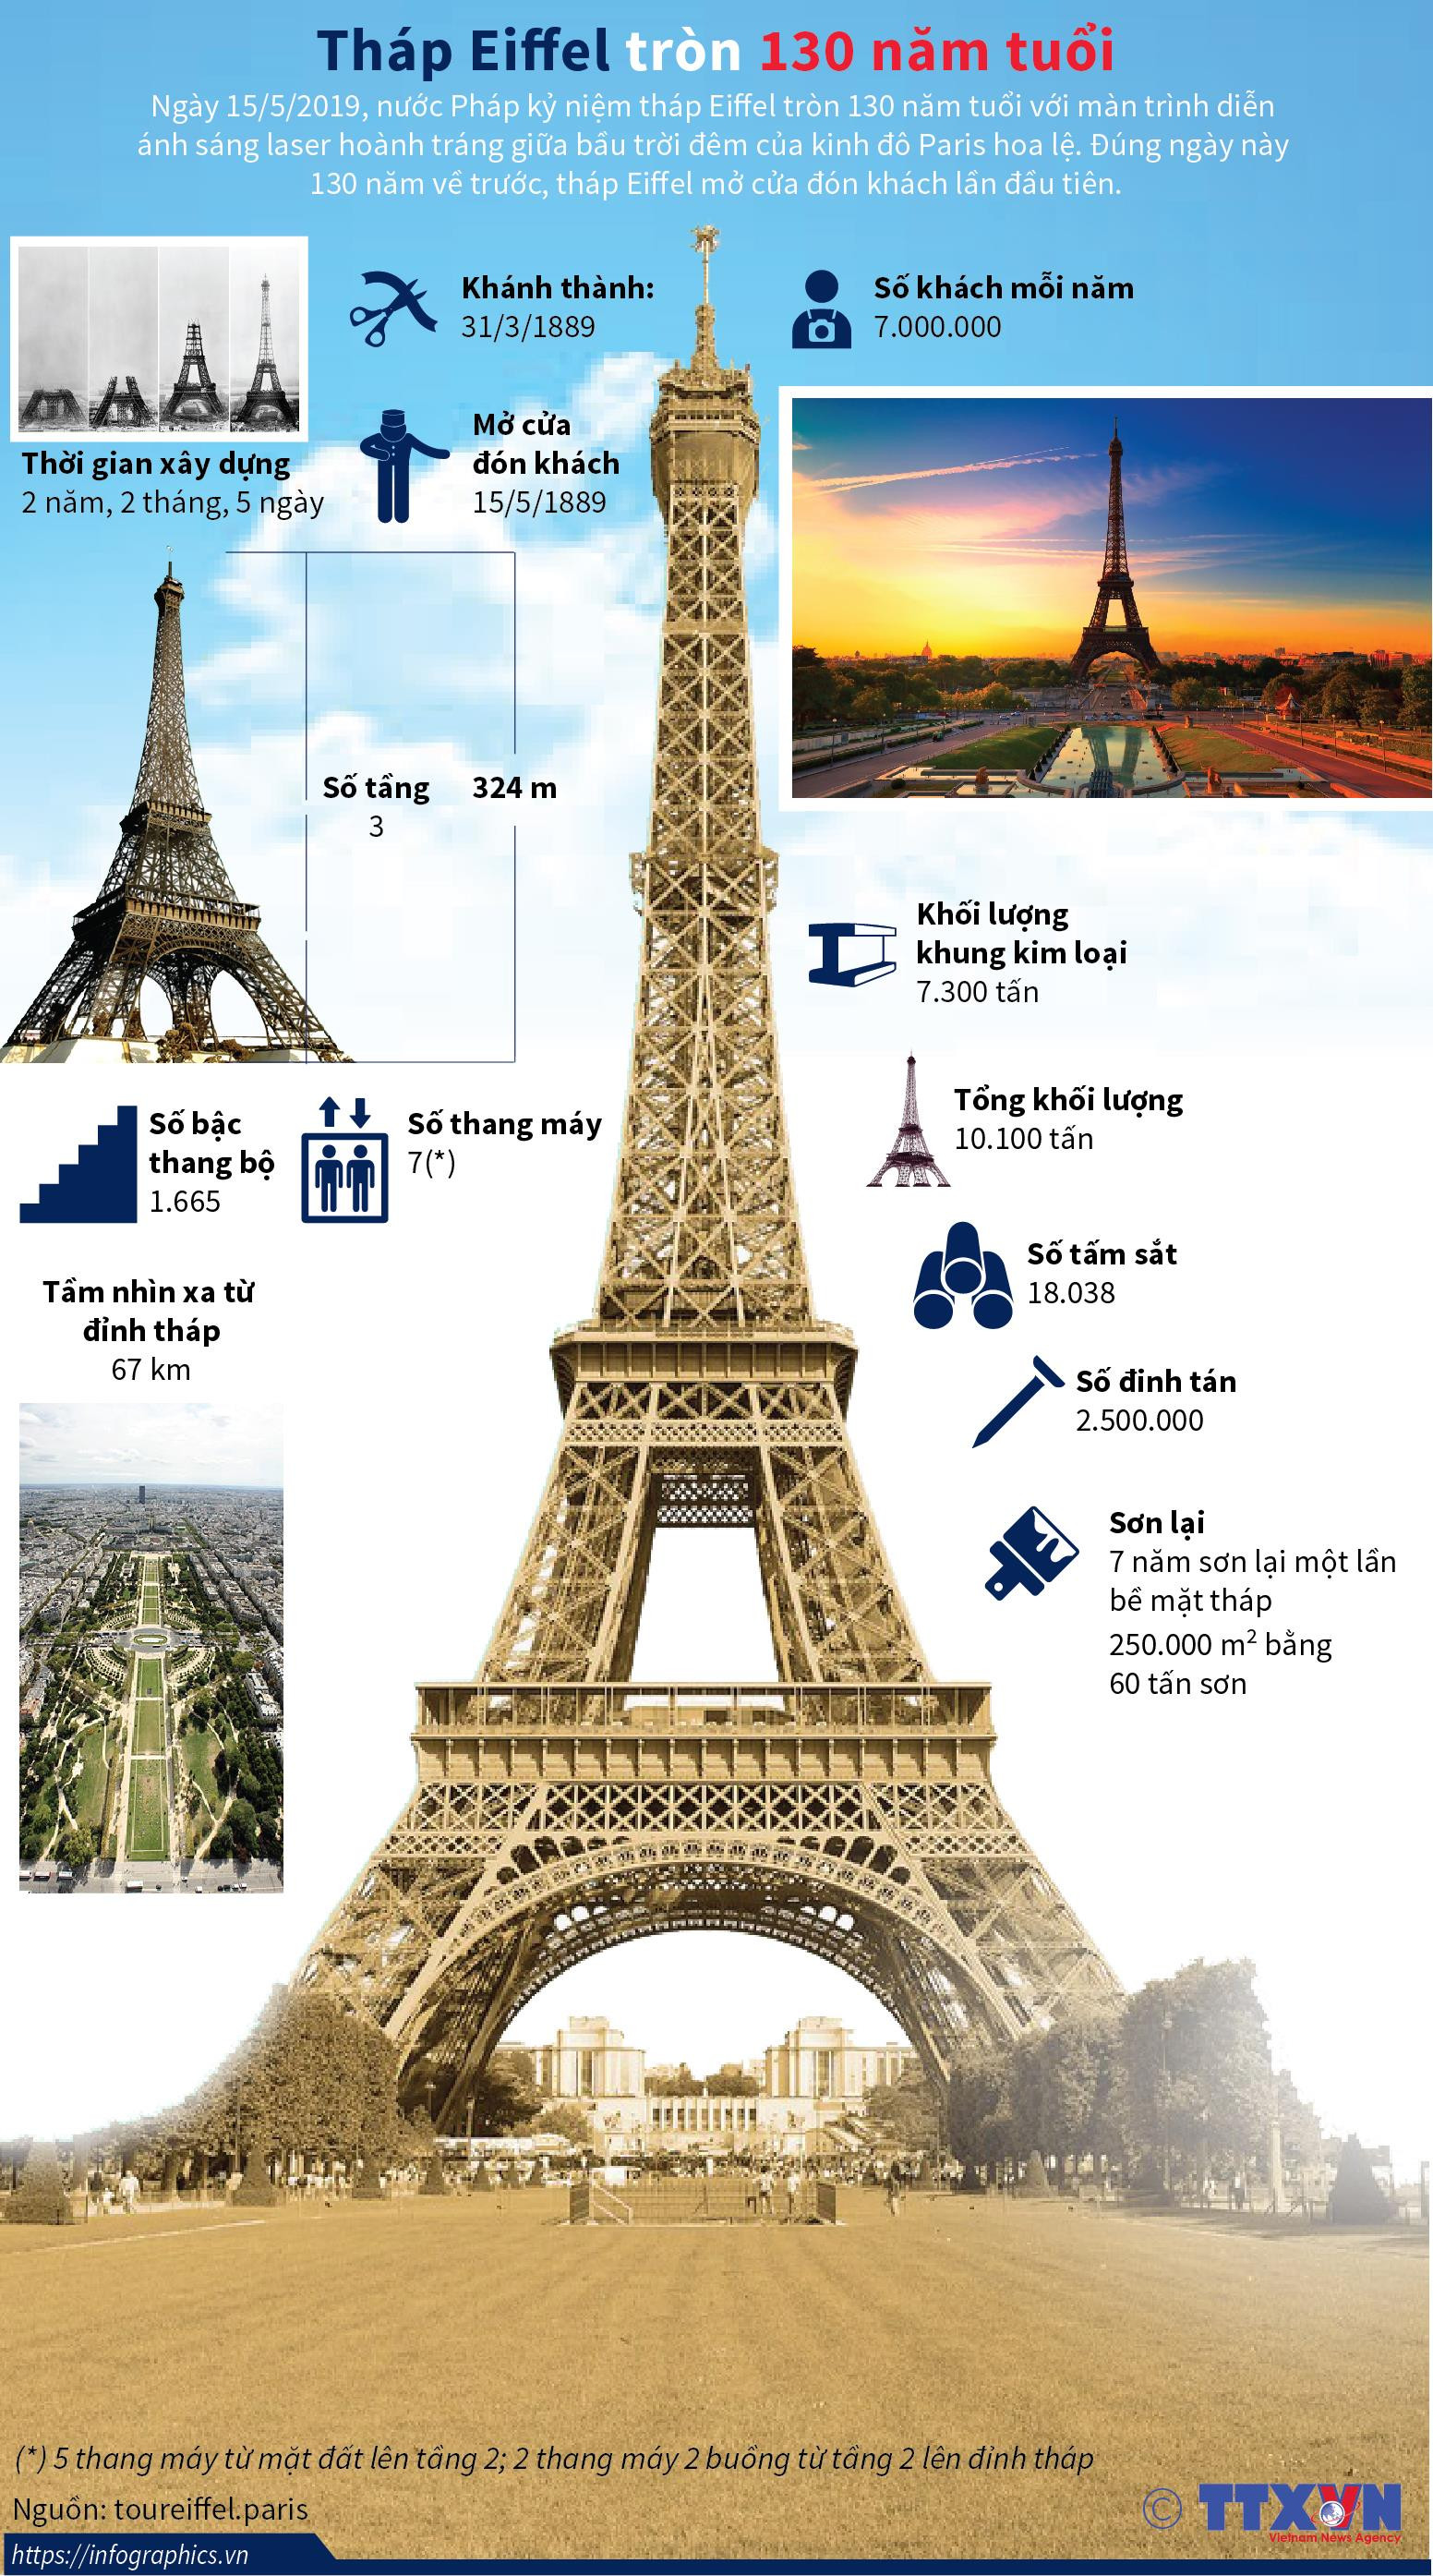 Tháp Eiffel - Biểu tượng của Paris tròn 130 năm tuổi